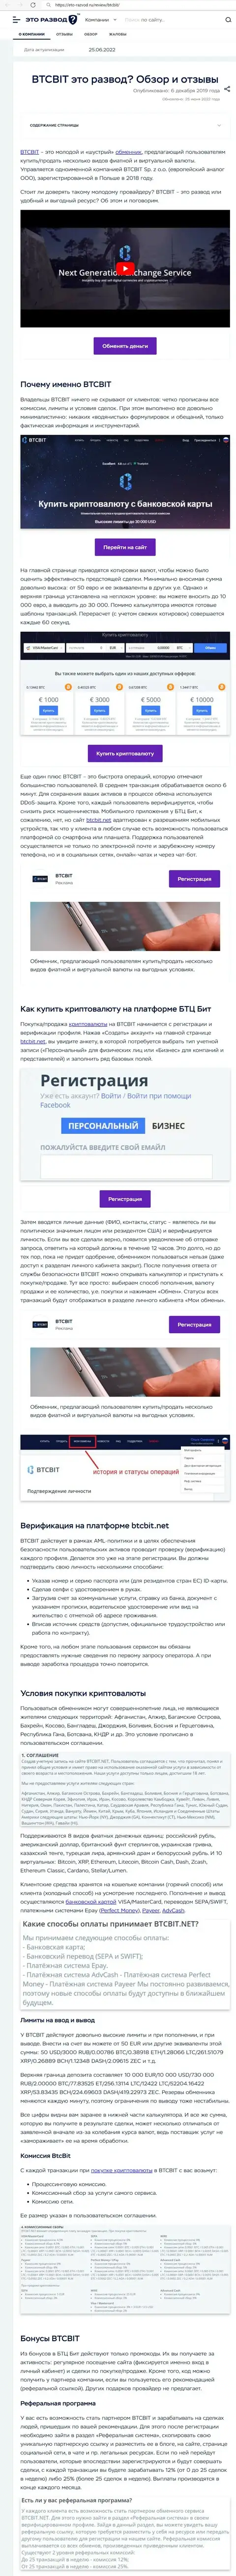 Обзор и условия работы организации BTC Bit в обзоре на сайте Eto Razvod Ru